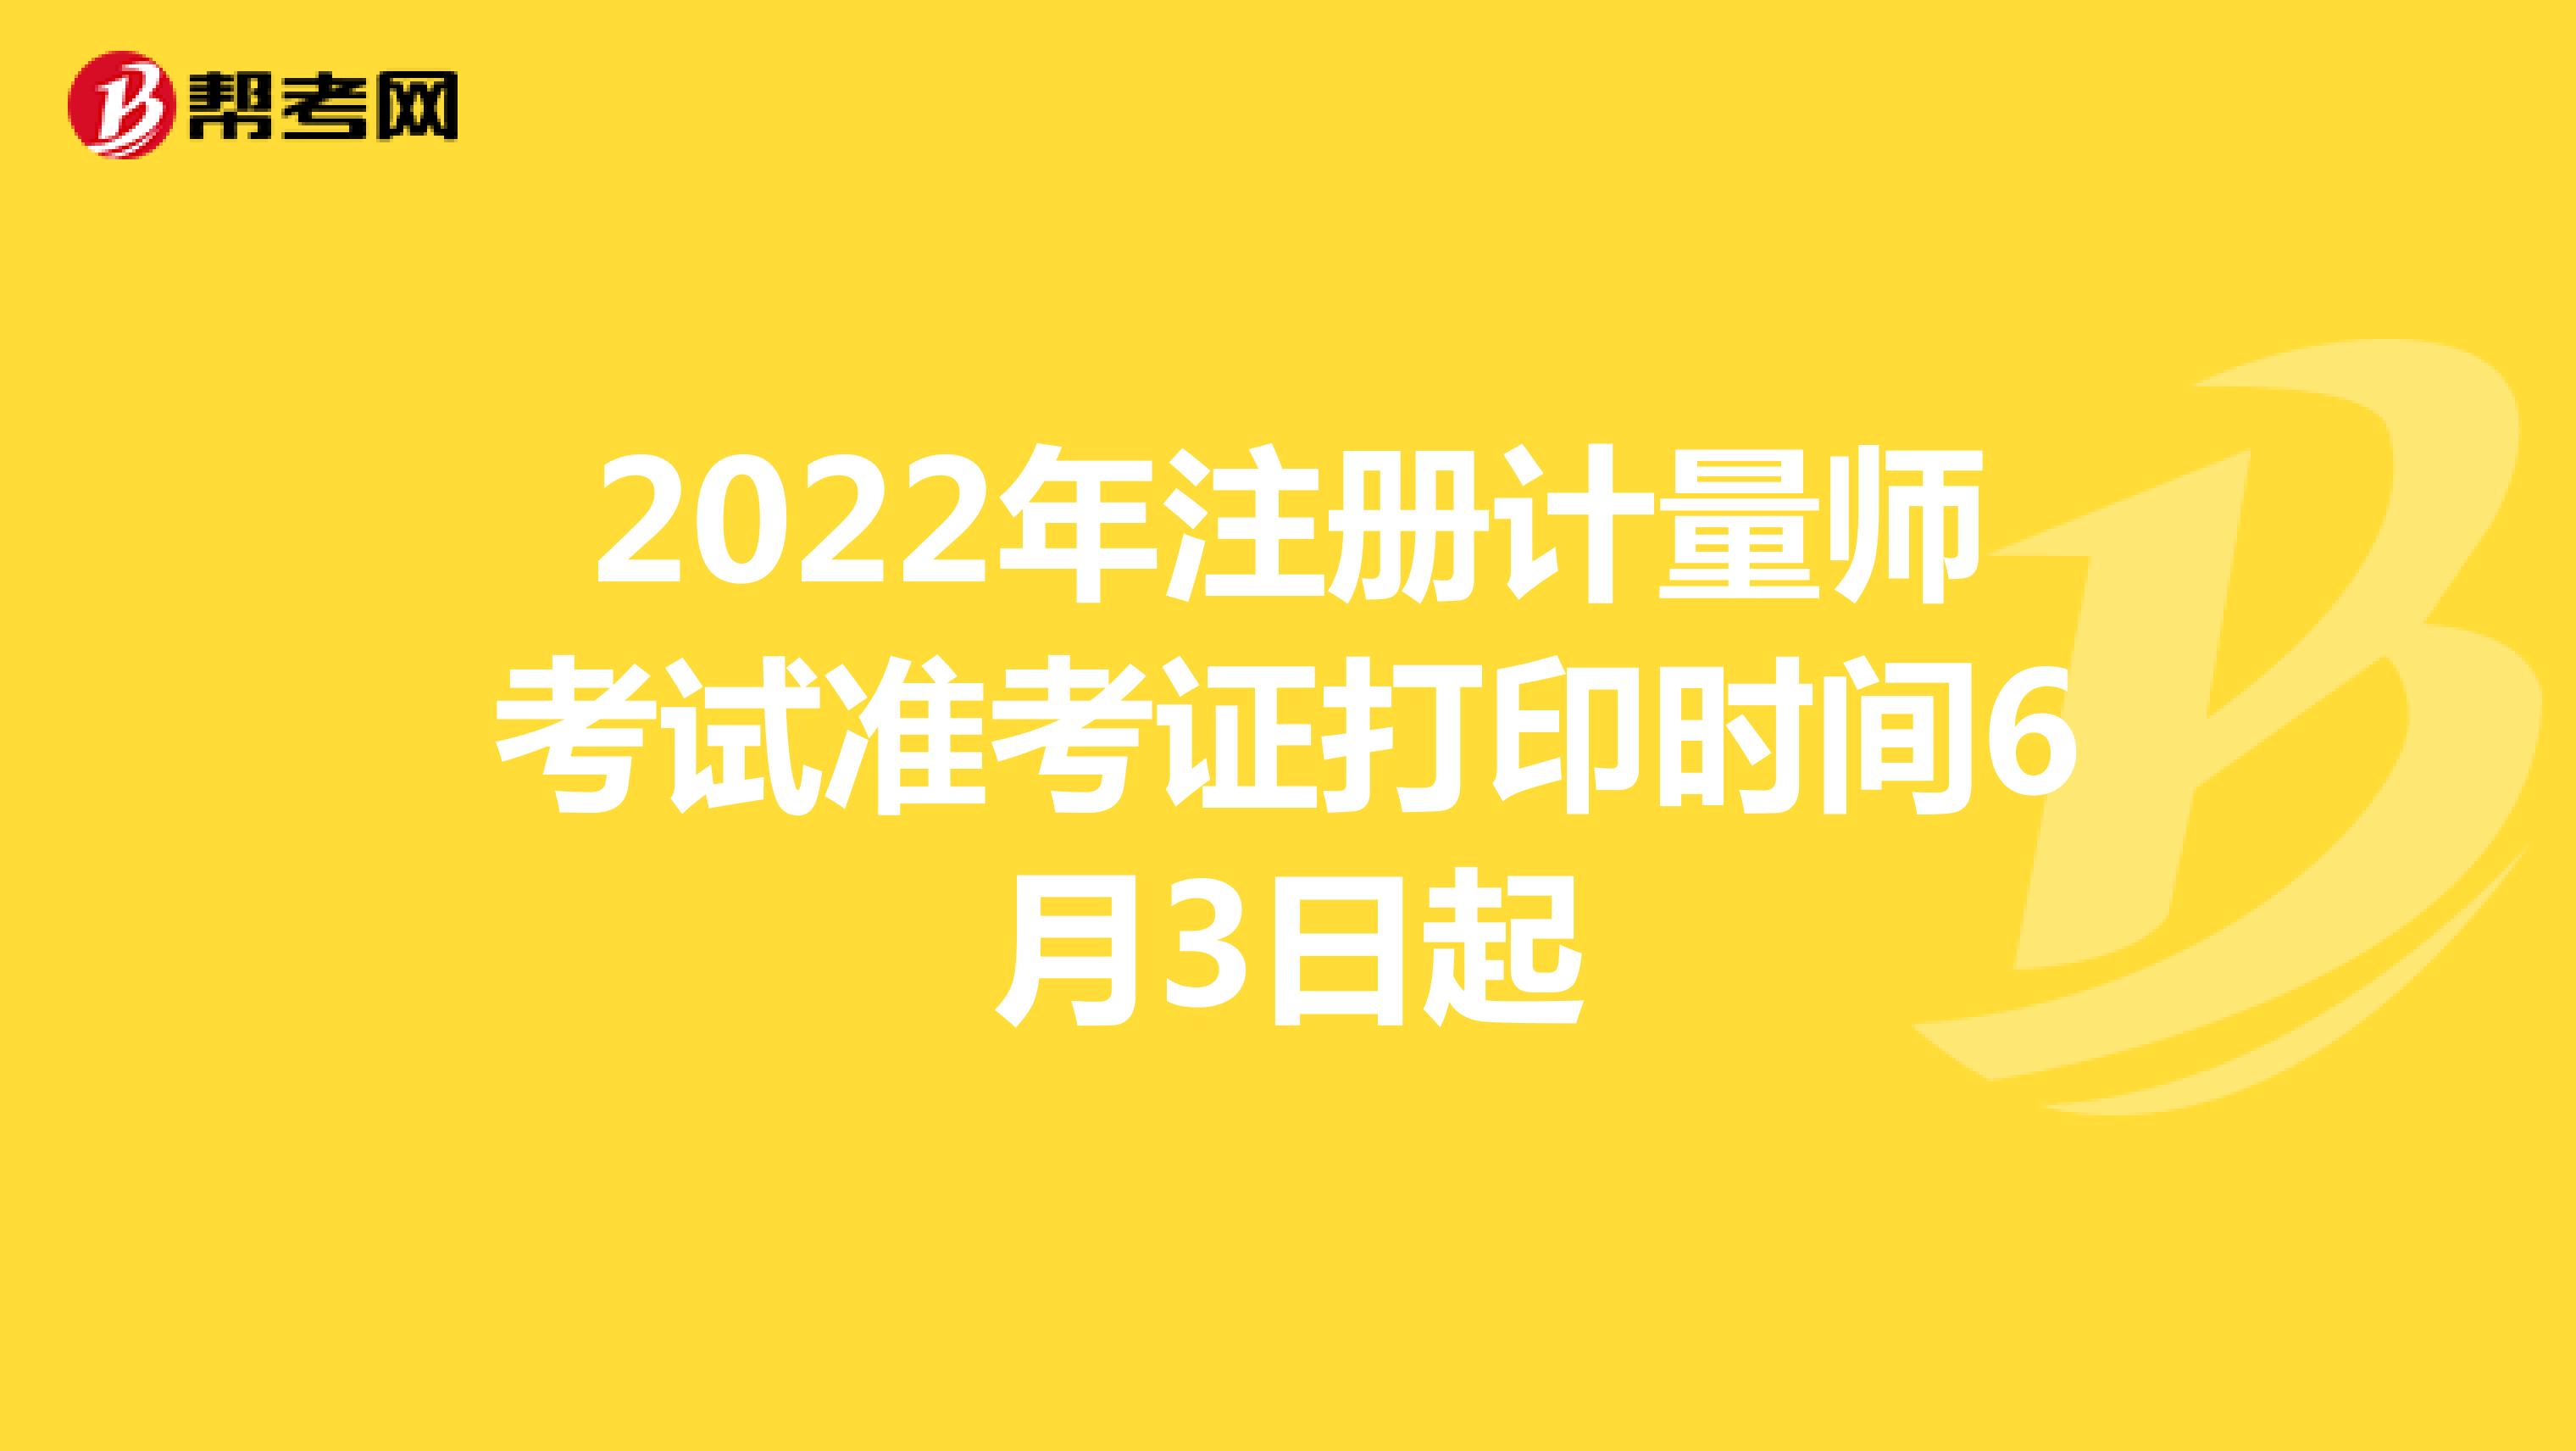 2022年注册计量师考试准考证打印时间6月3日起